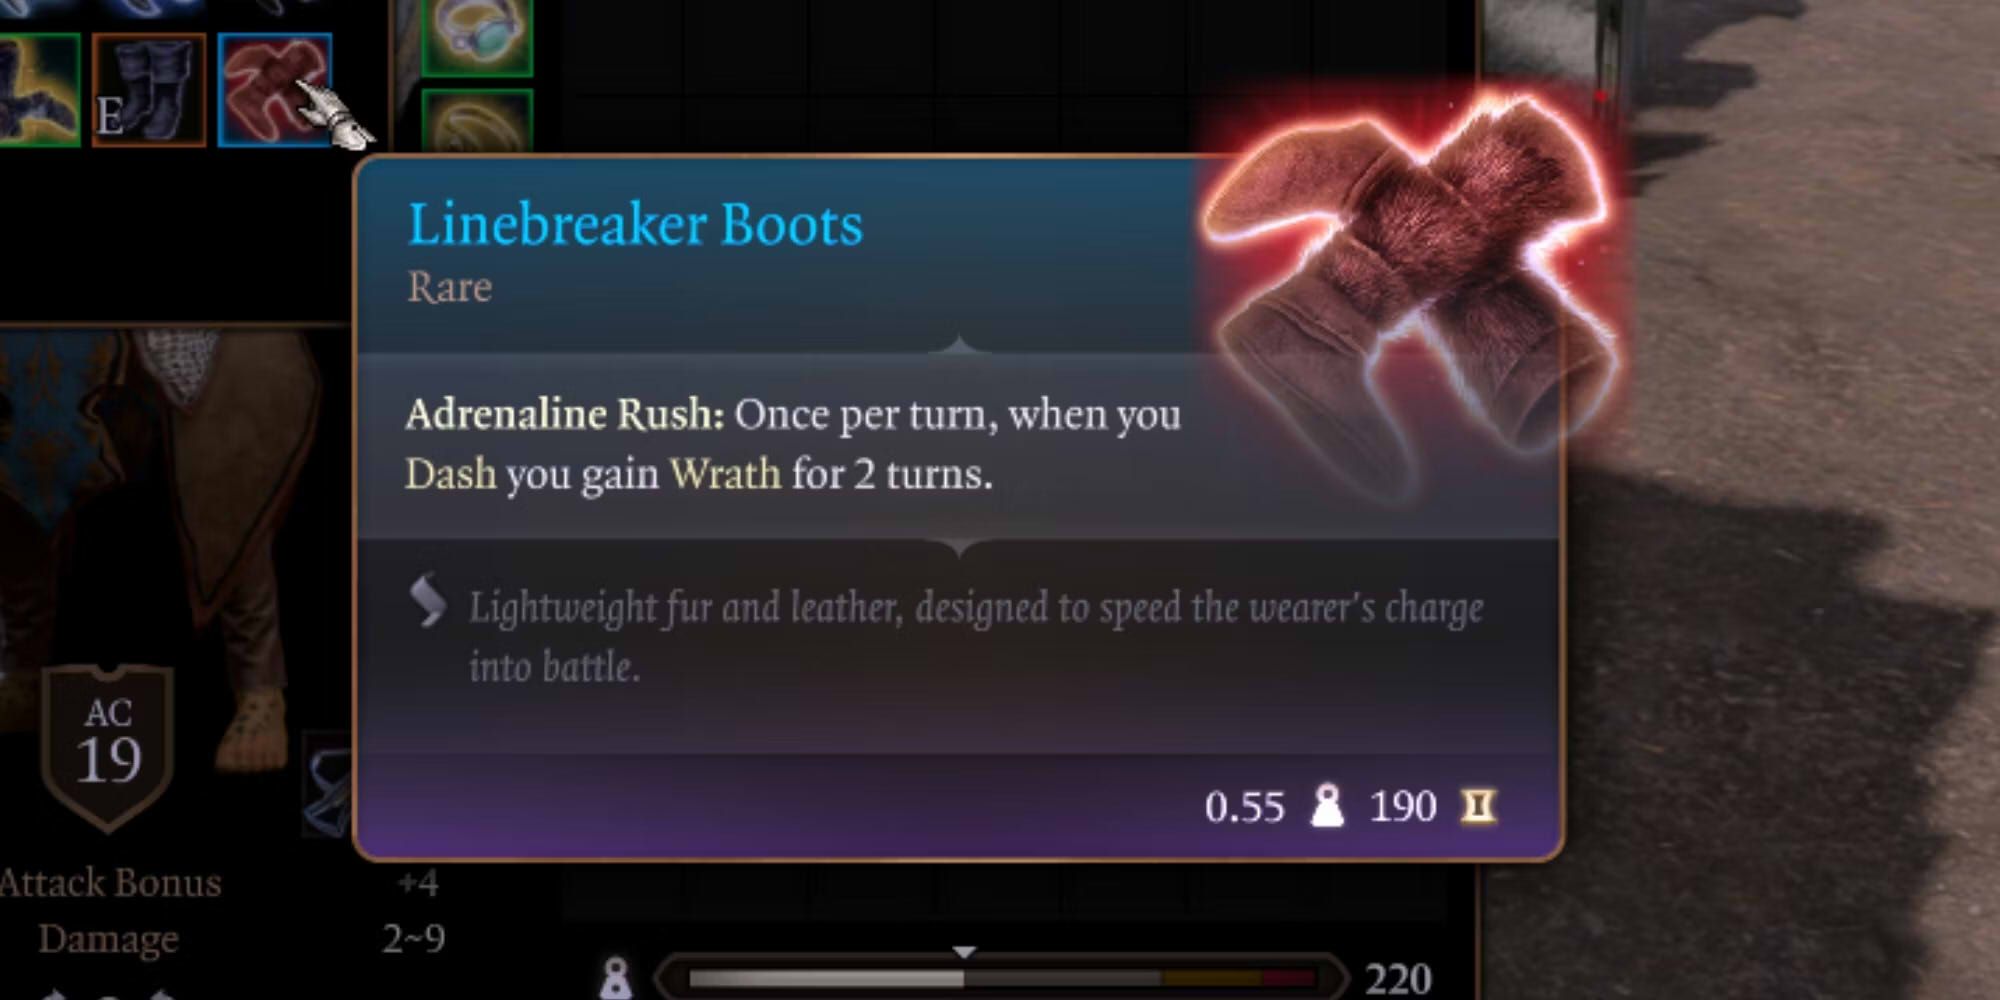 Linebreaker Boots in Baldur's Gate 3